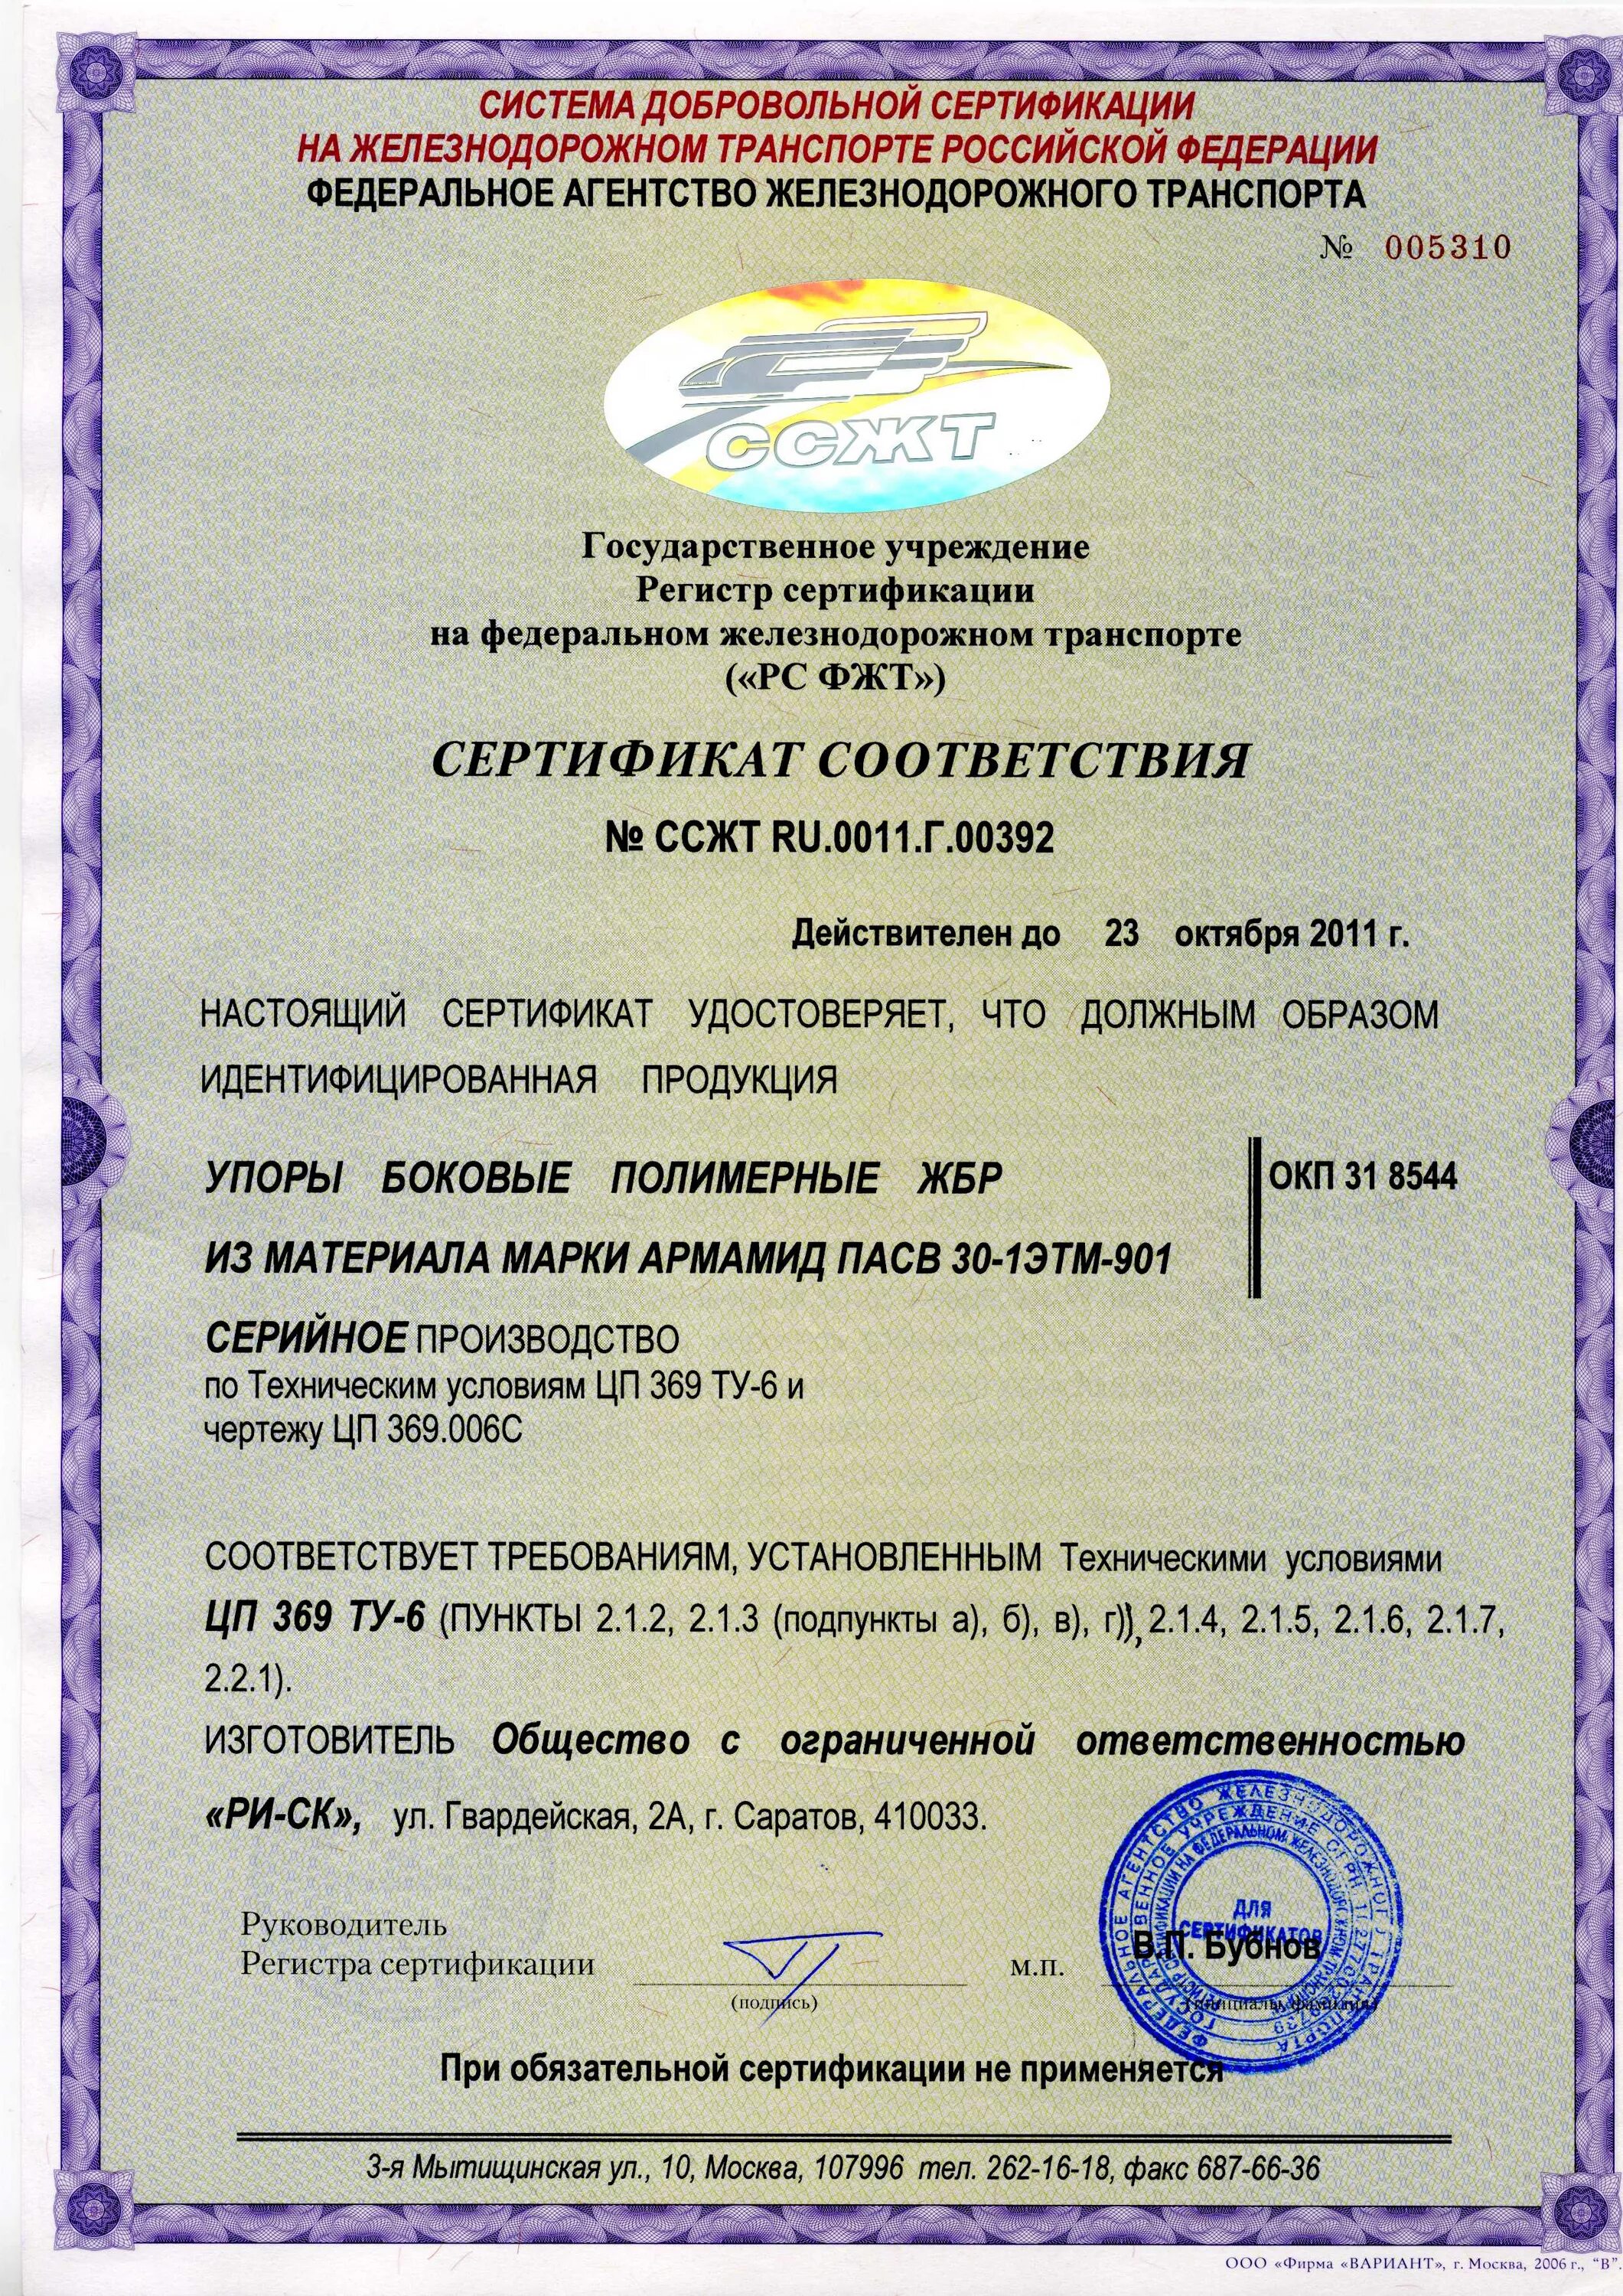 Сертификация д. Сертификация на ЖД транспорте. Сертификаты соответствия на железнодорожного транспорта. Сертификат железнодорожного транспорта. Система сертификации на Железнодорожном транспорте.